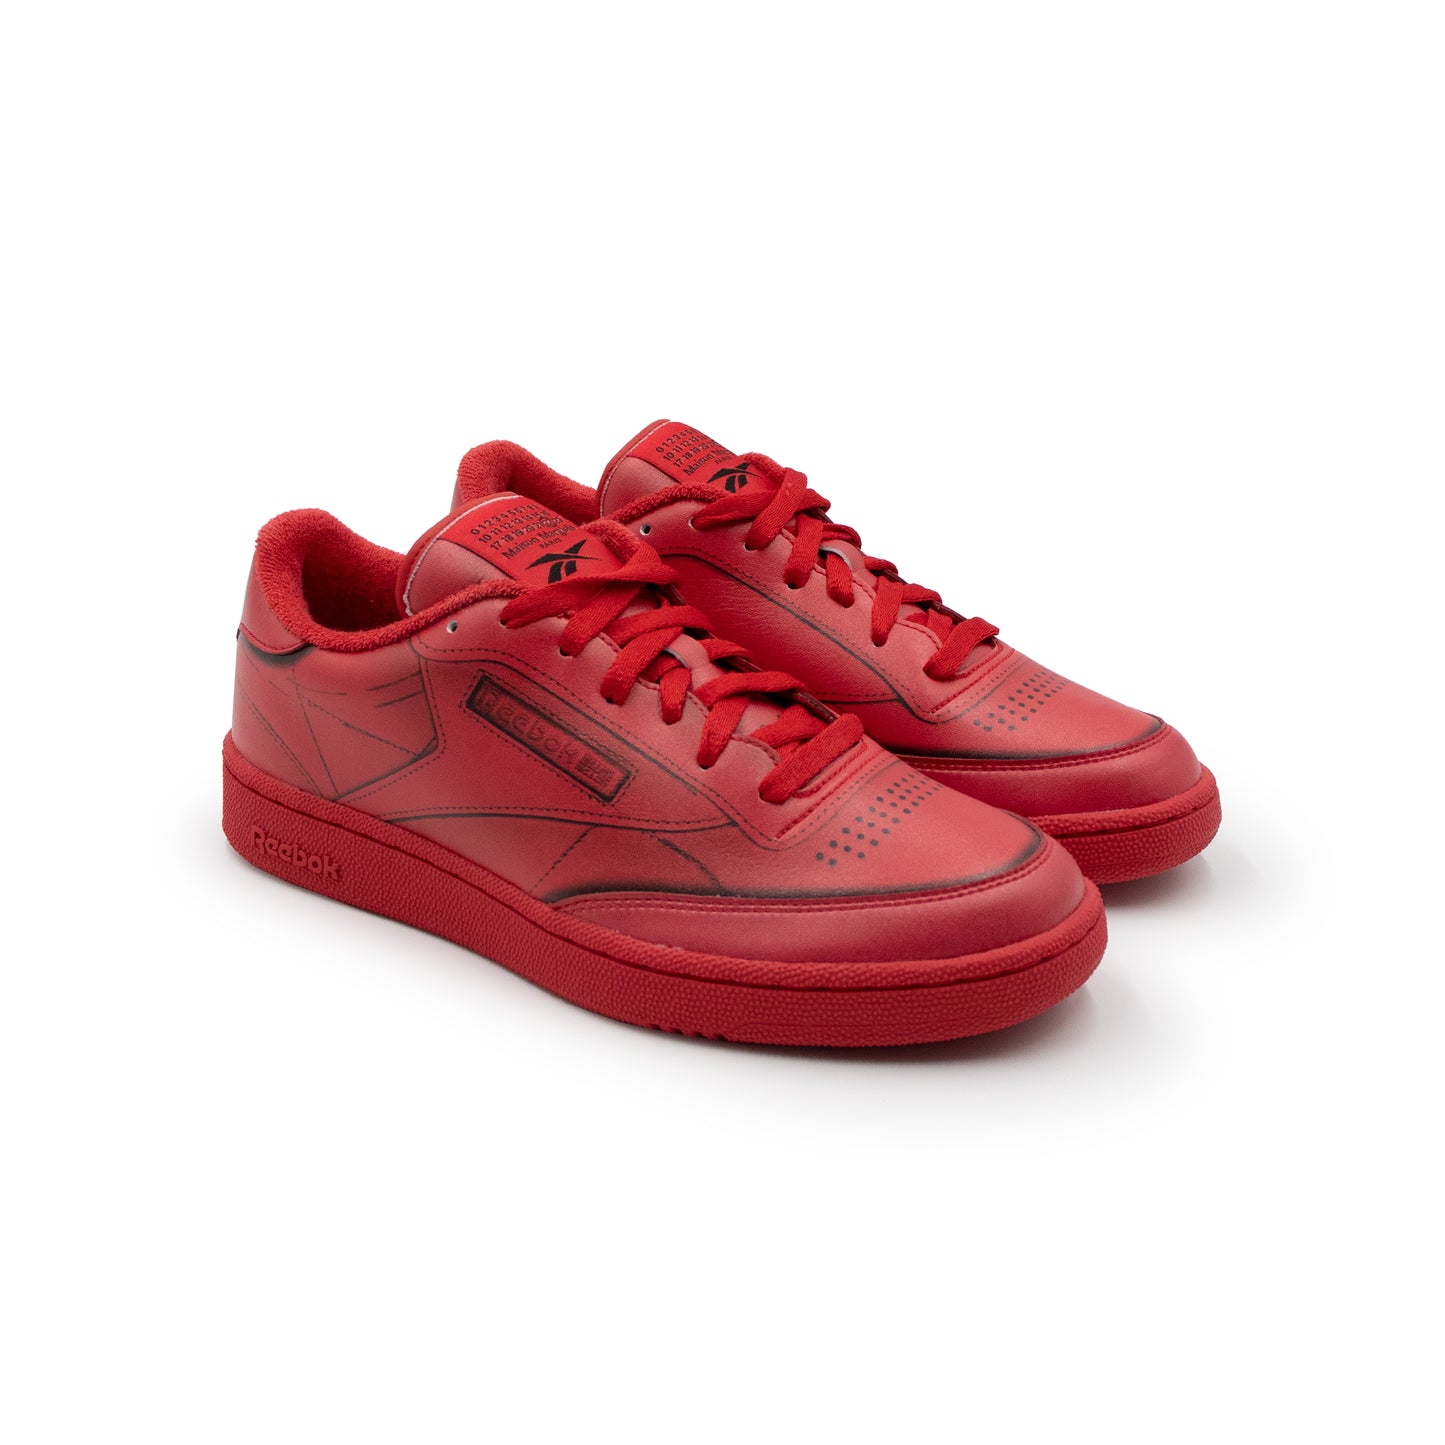 Reebok x Maison Margiela Project 0 CC Tl Sneaker in Red